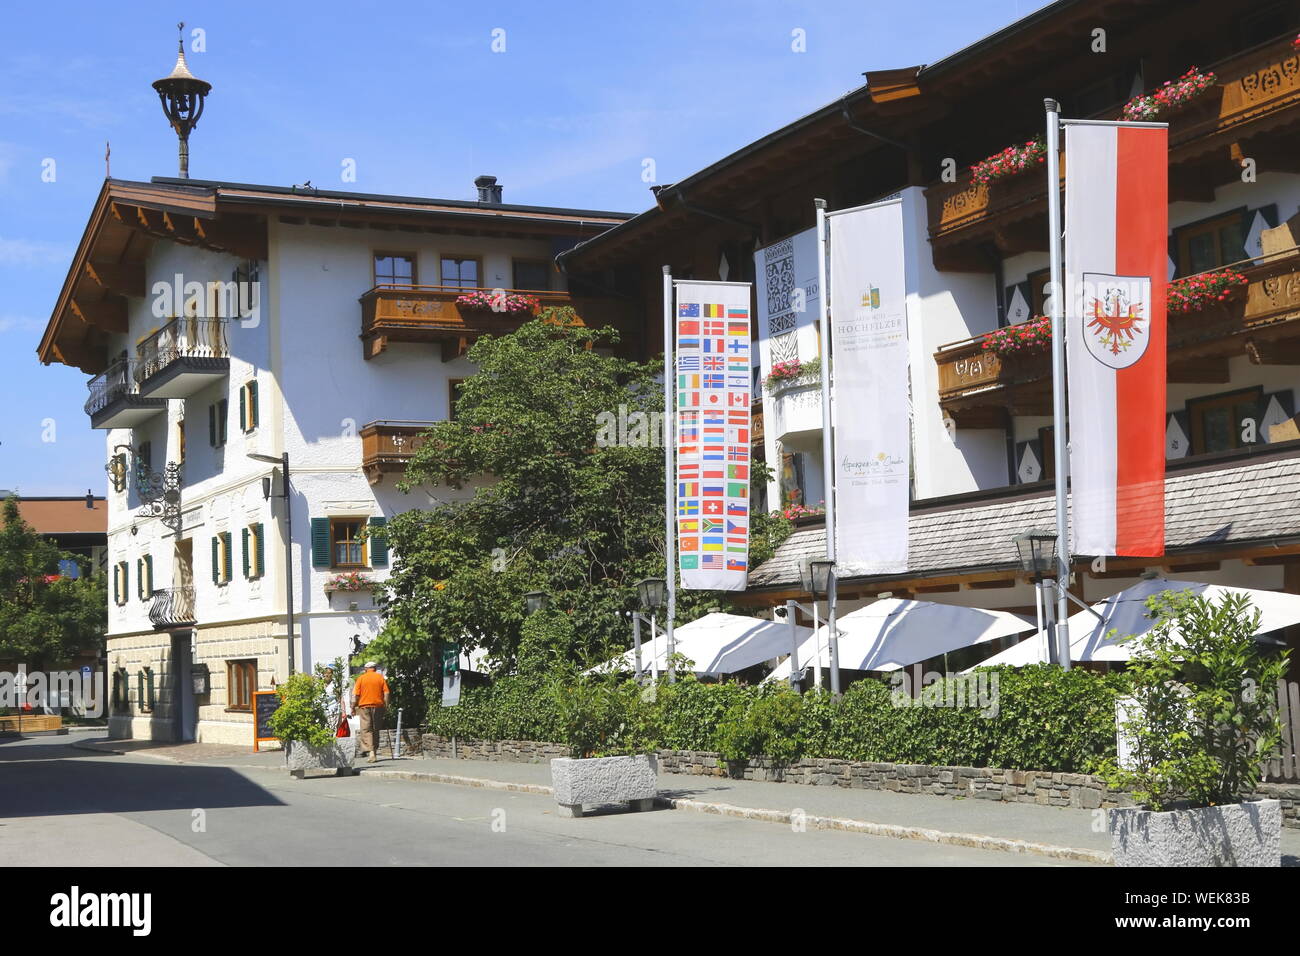 Typisches Haus im alpenländischen Baustil Foto Stock